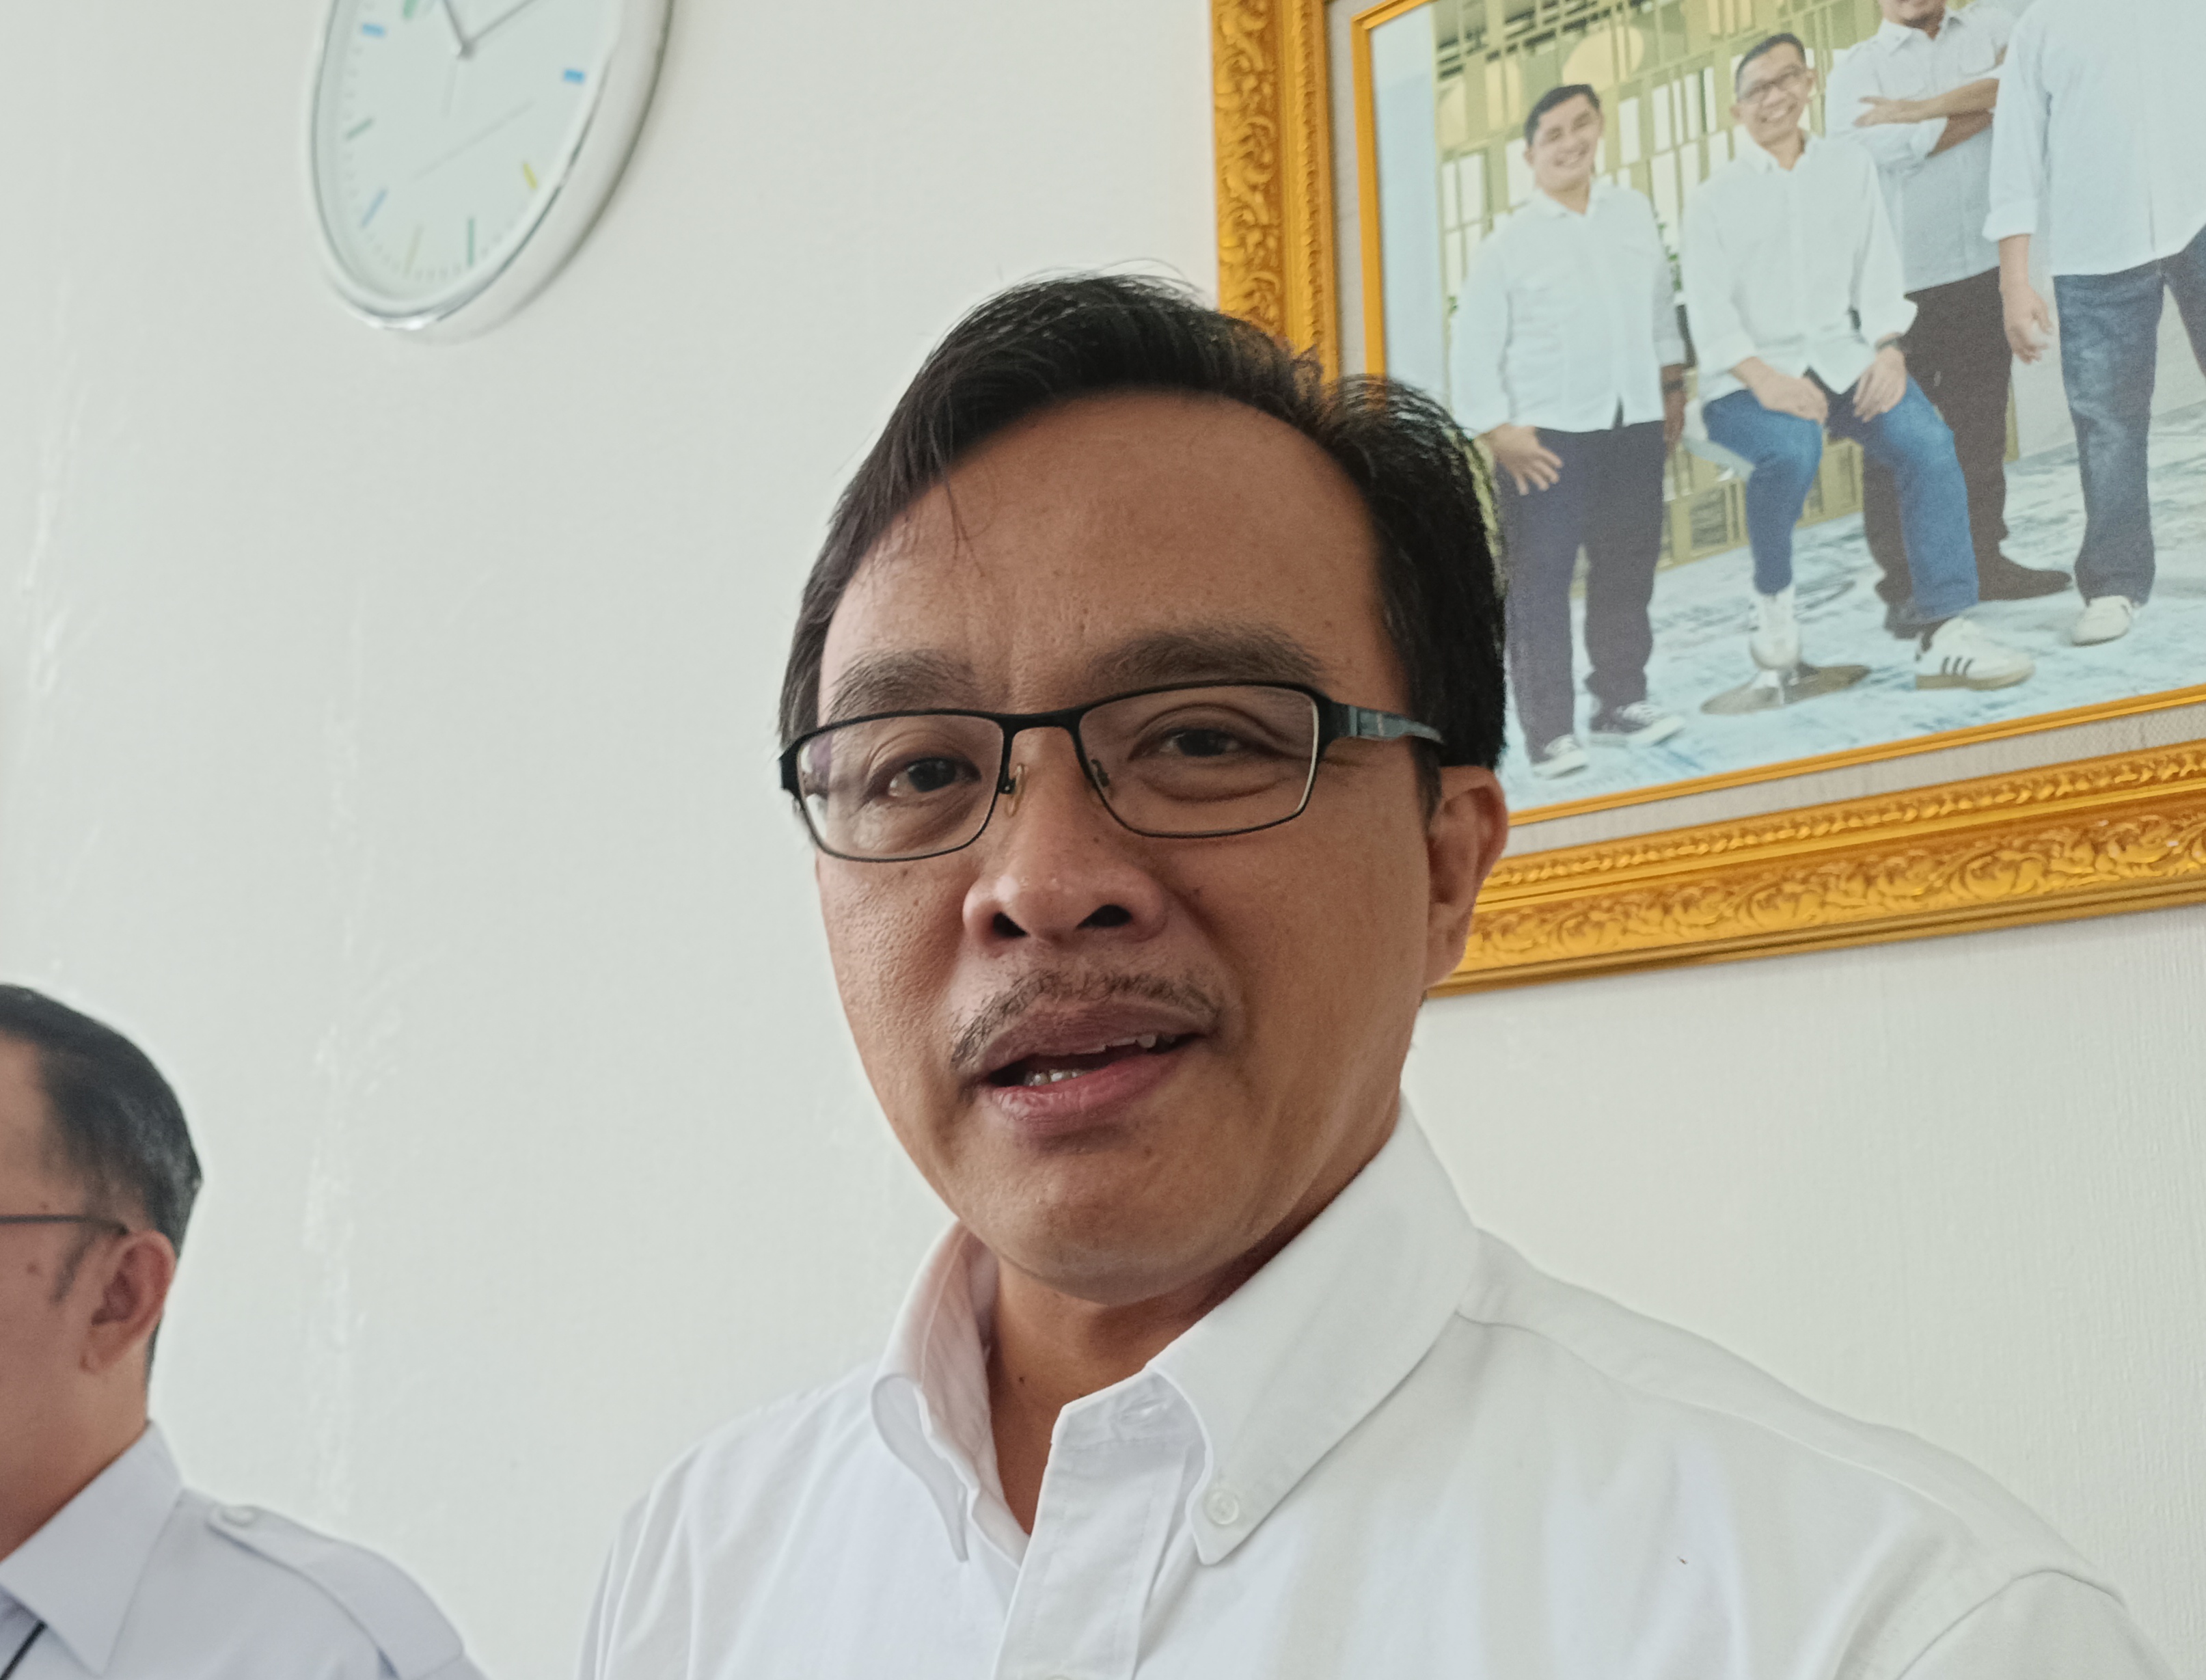 Posko Pengaduan THR Disnaker Lampung Sudah Terima Aduan Untuk 21 Perusahaan